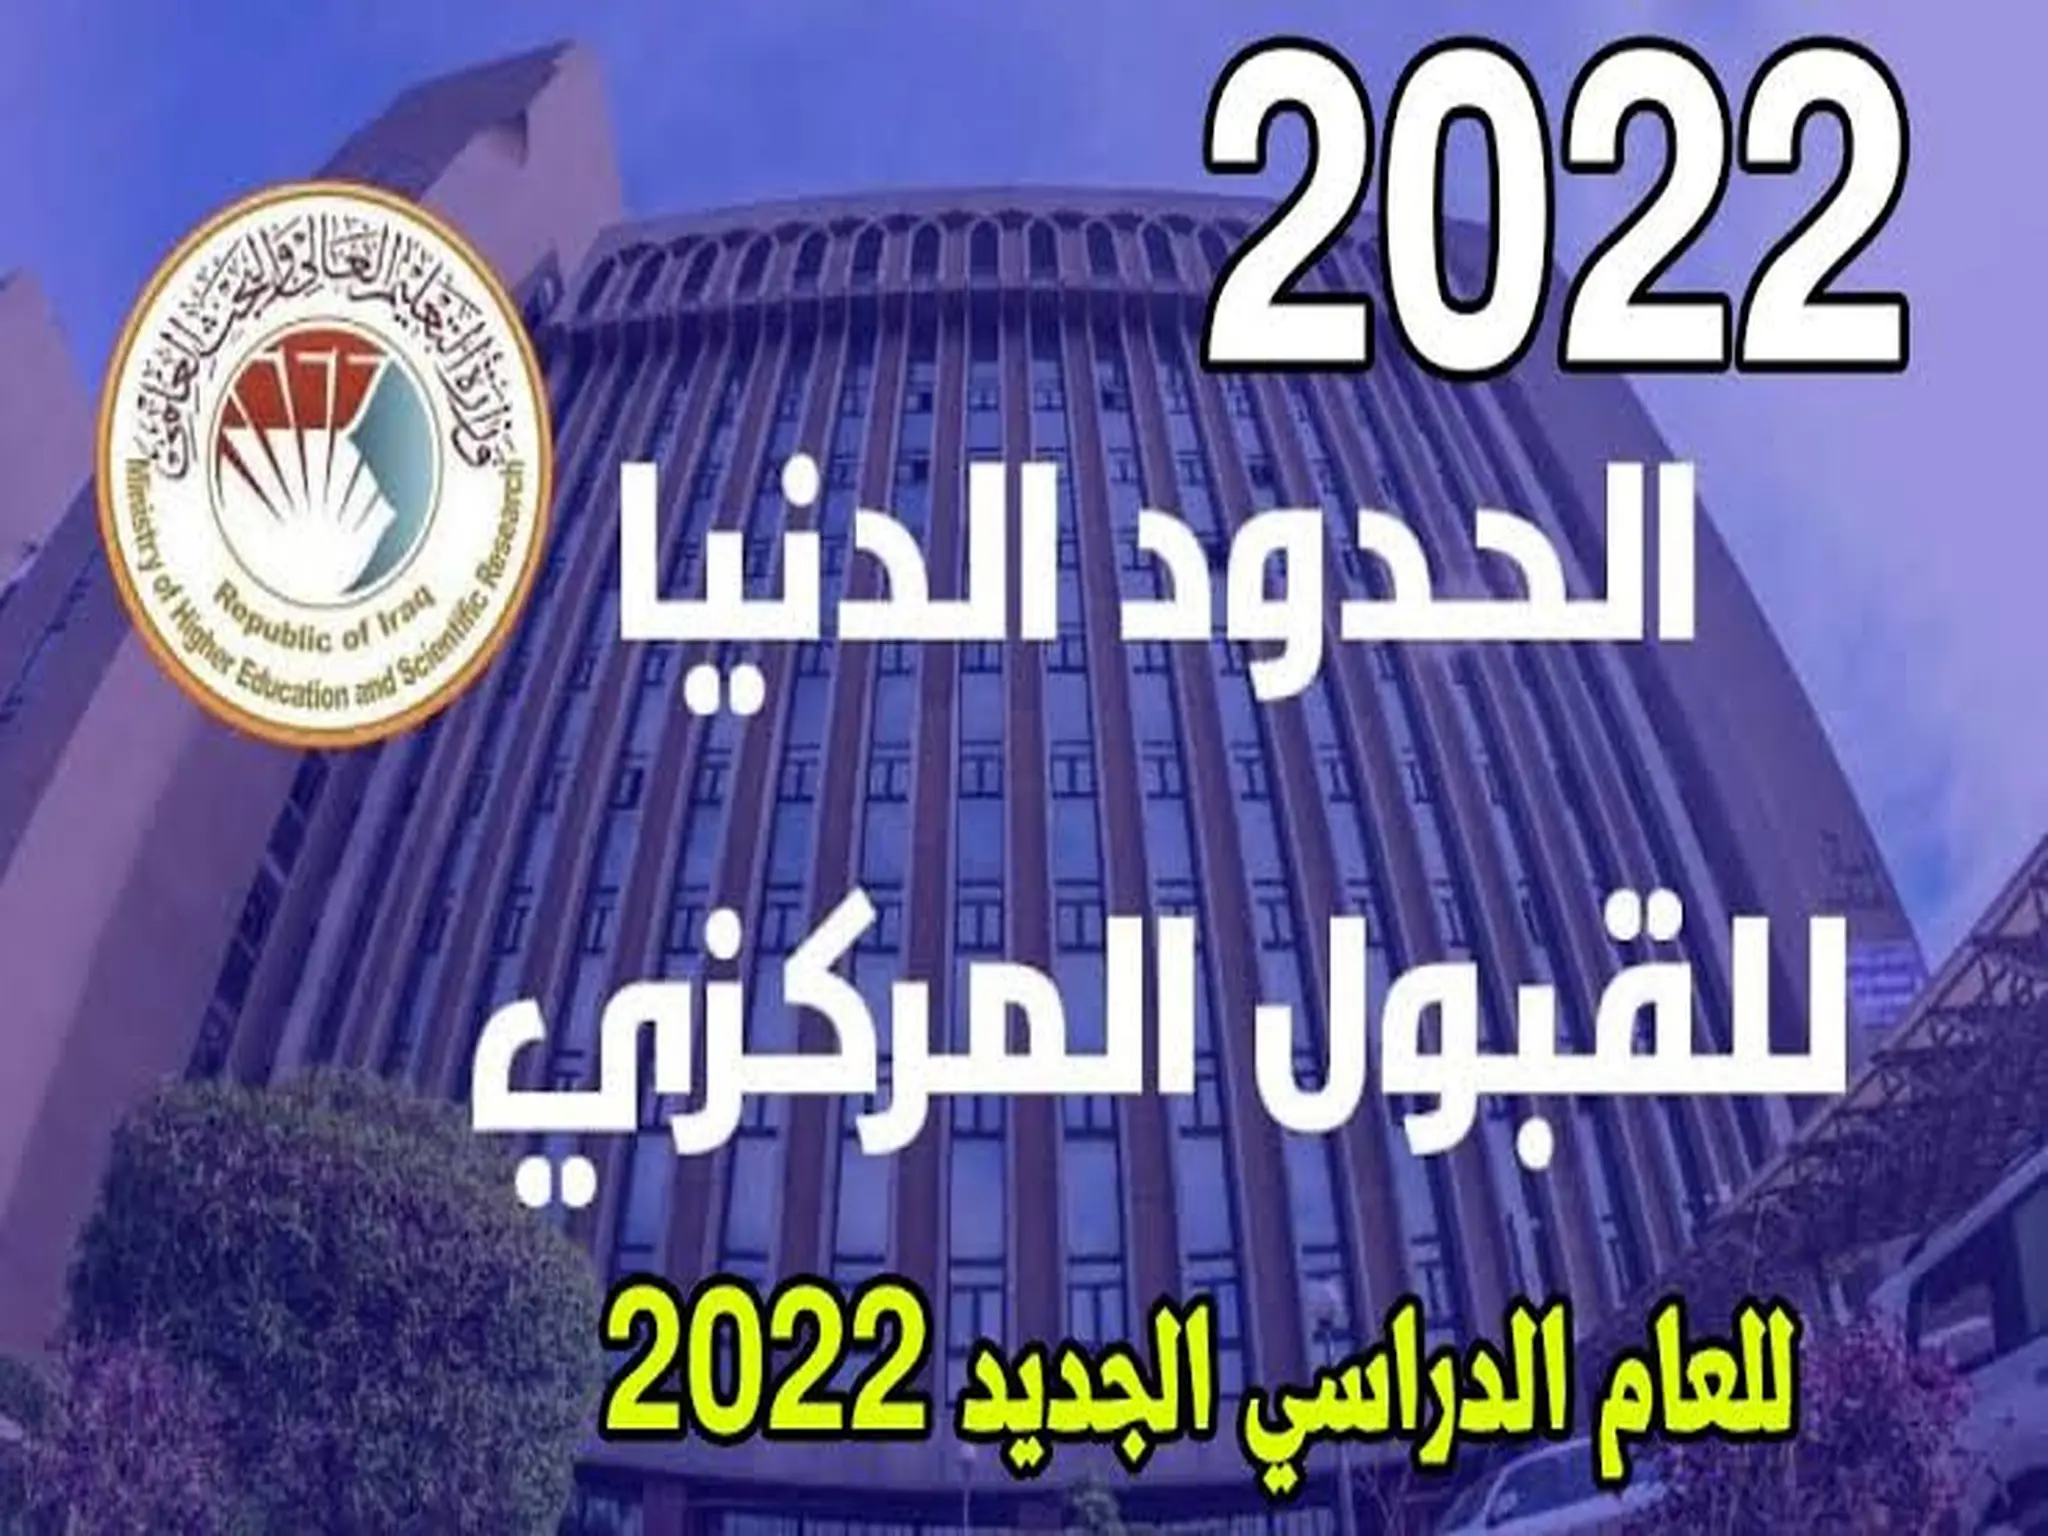 الحد الادني للقبول المركزى بالجامعات في العراق 2022-2023